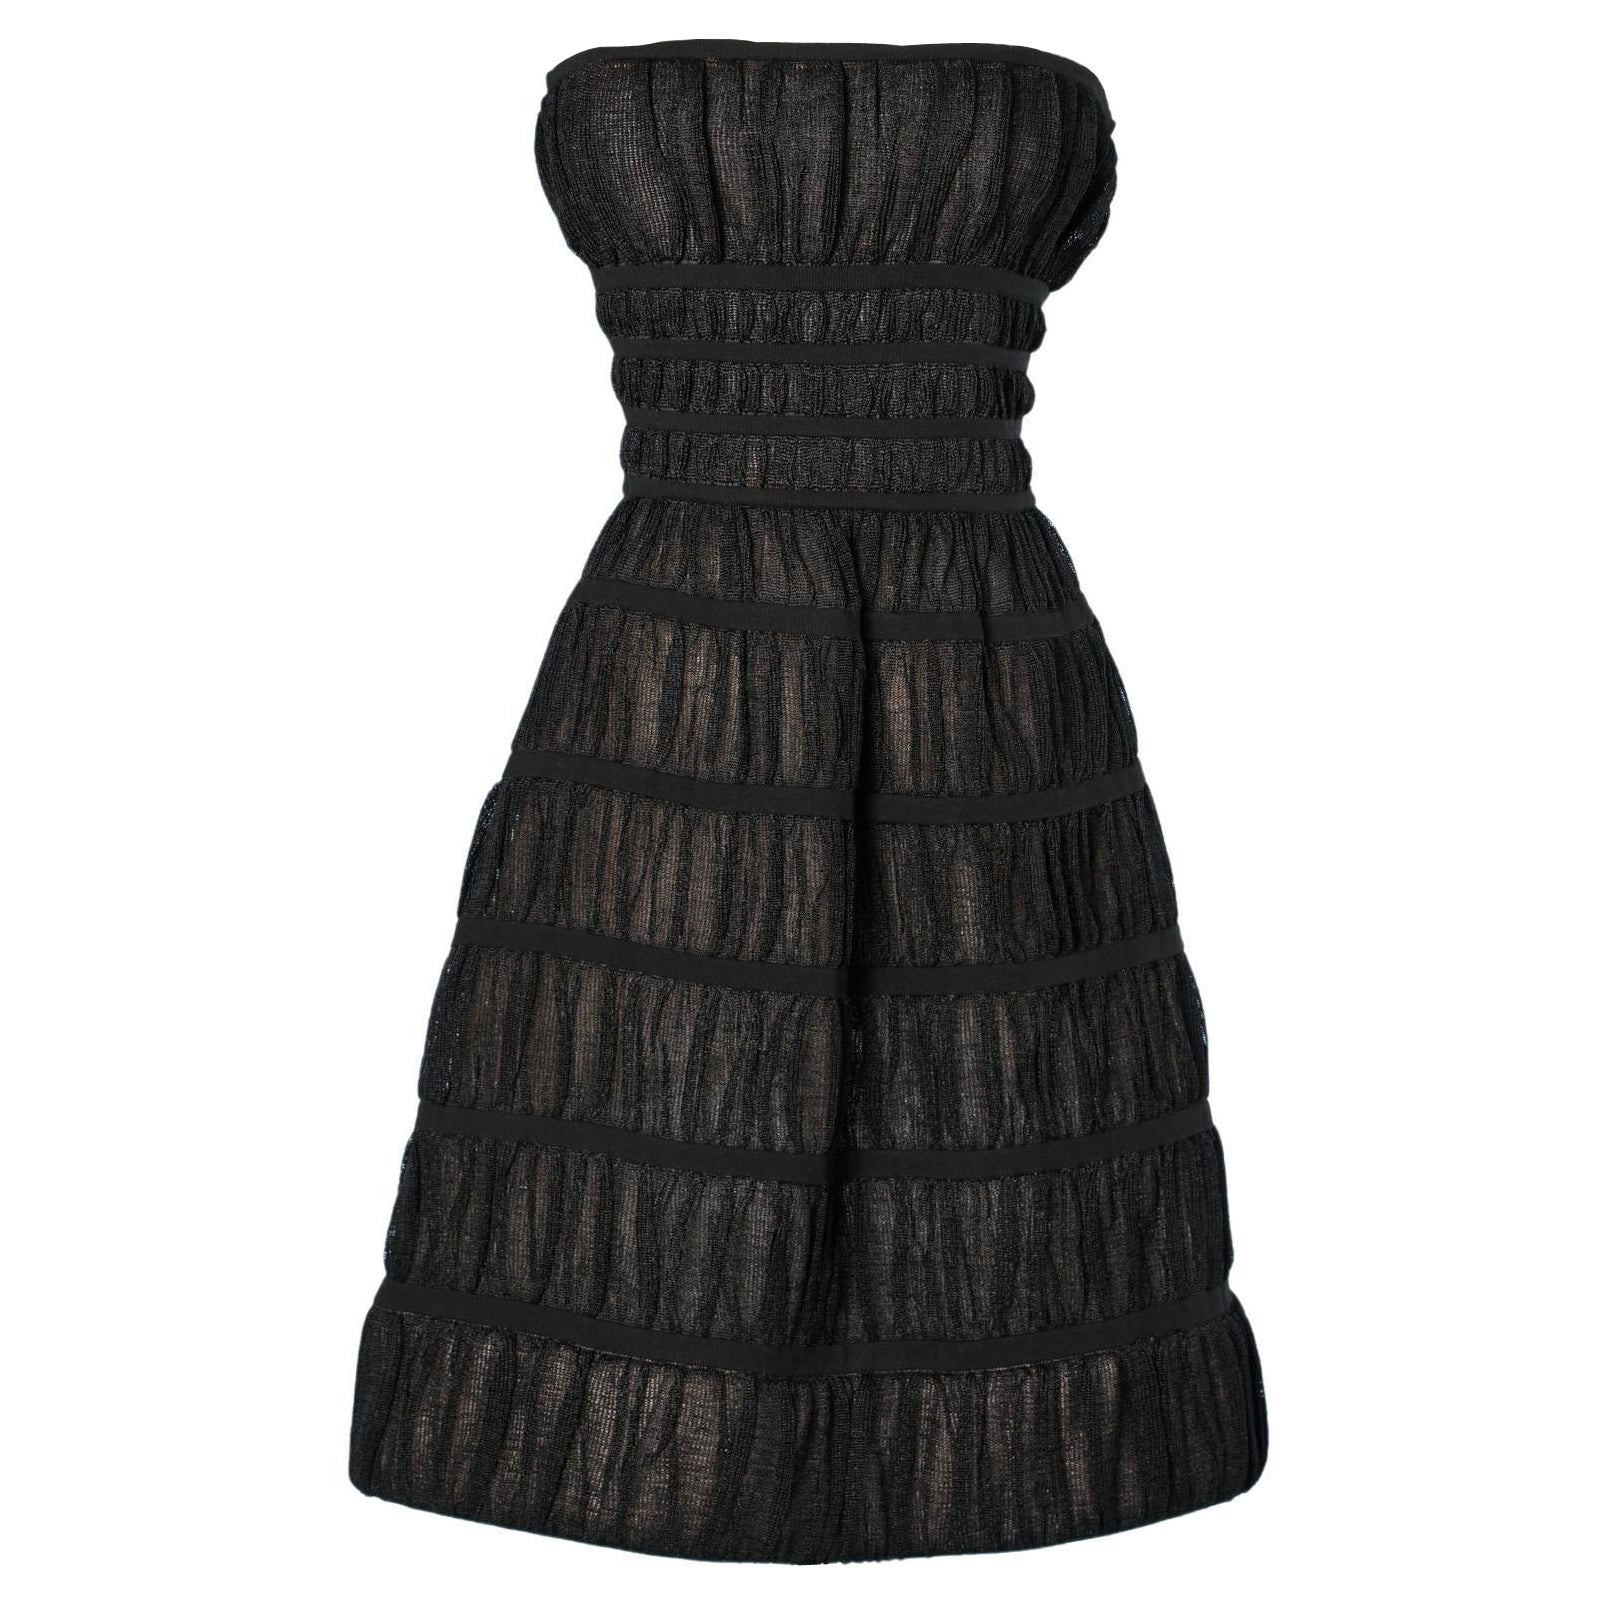 Black bustier dress AlaÏa